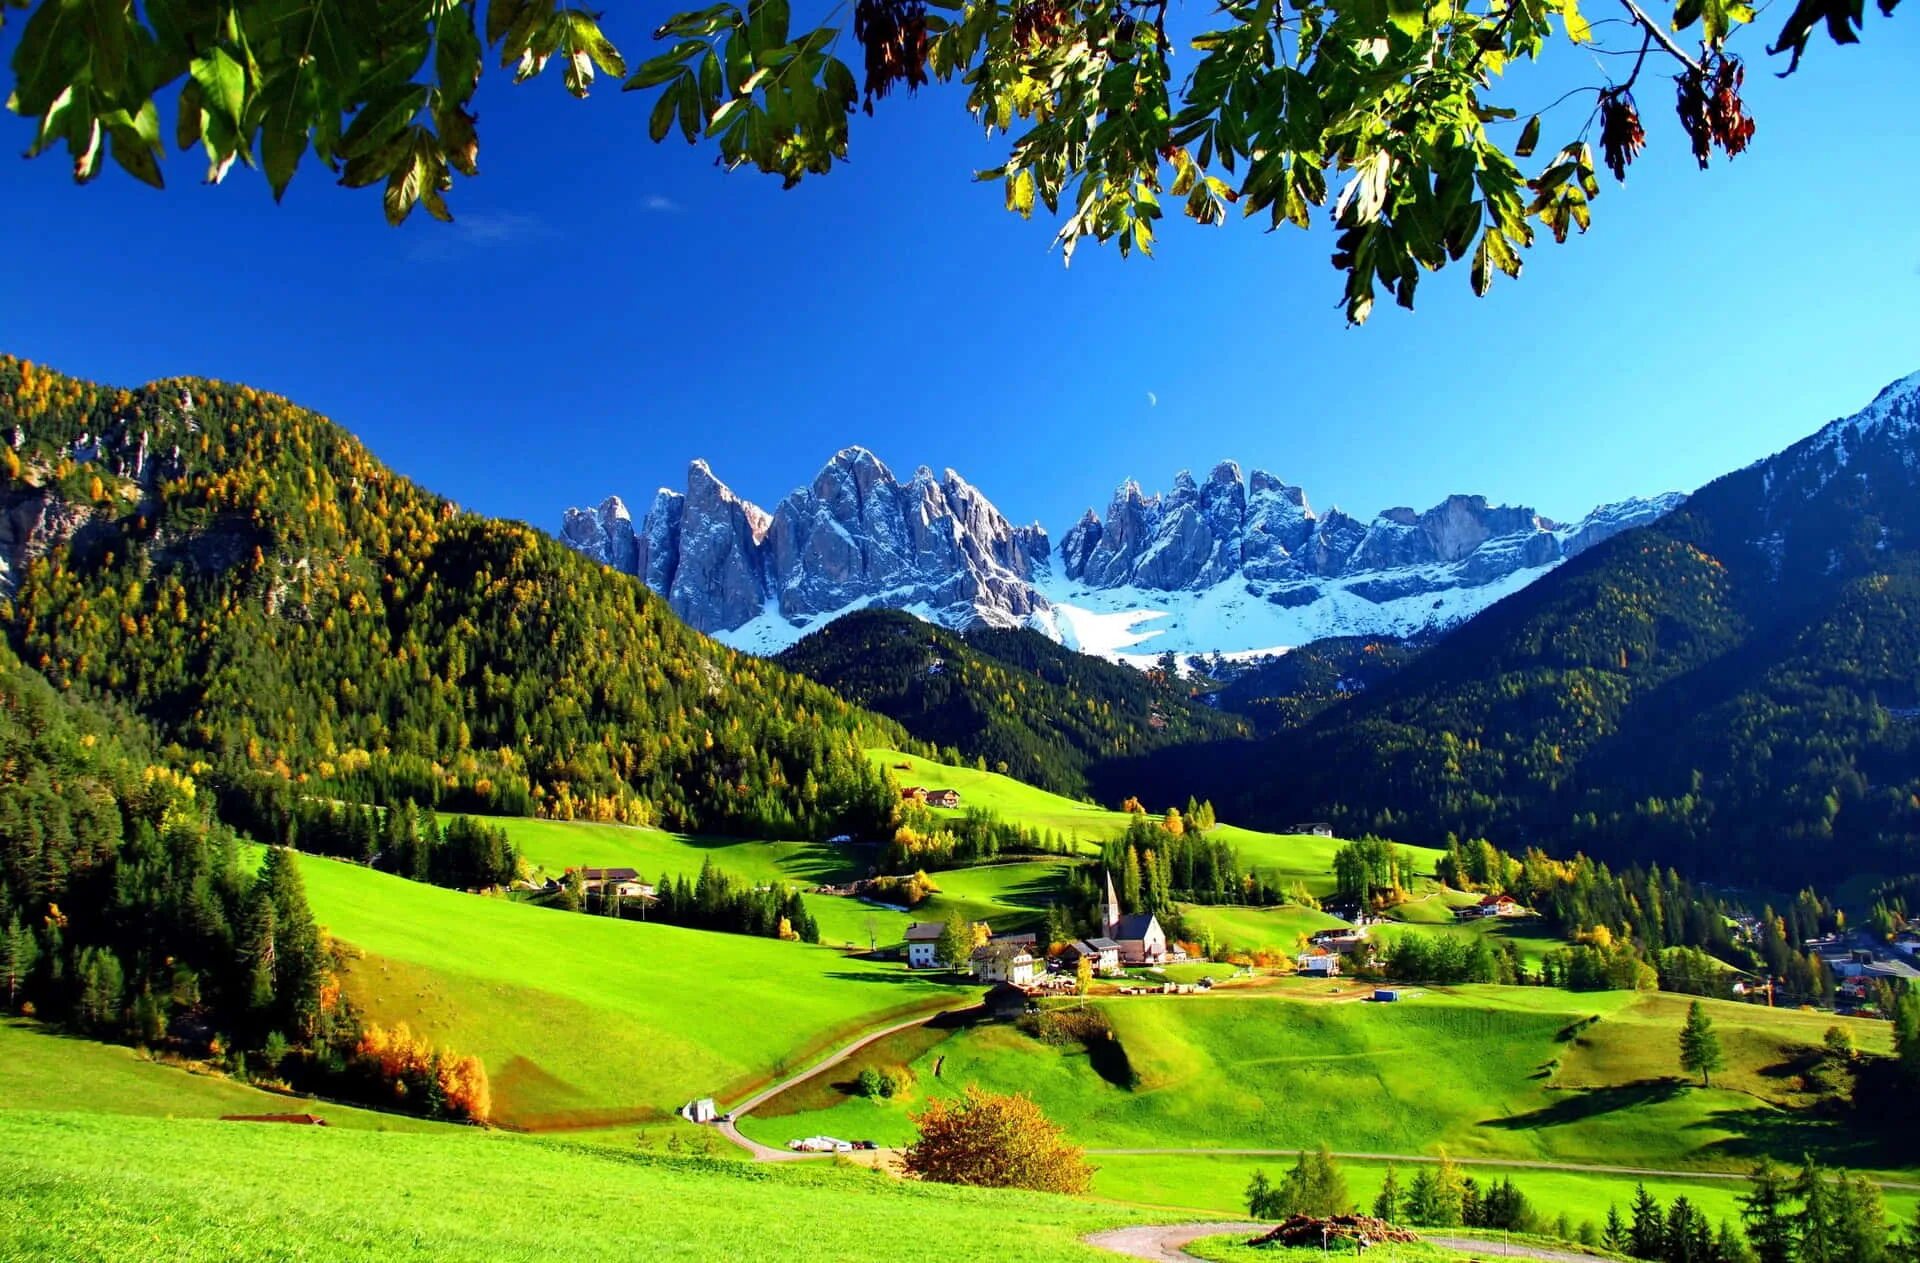 Долина Фунес Доломитовые Альпы Италия. Долина Фунес Южный Тироль Италия. Доломитовые горы, Италия, Val di Funes. Альпийские Луга Италии. Natural view